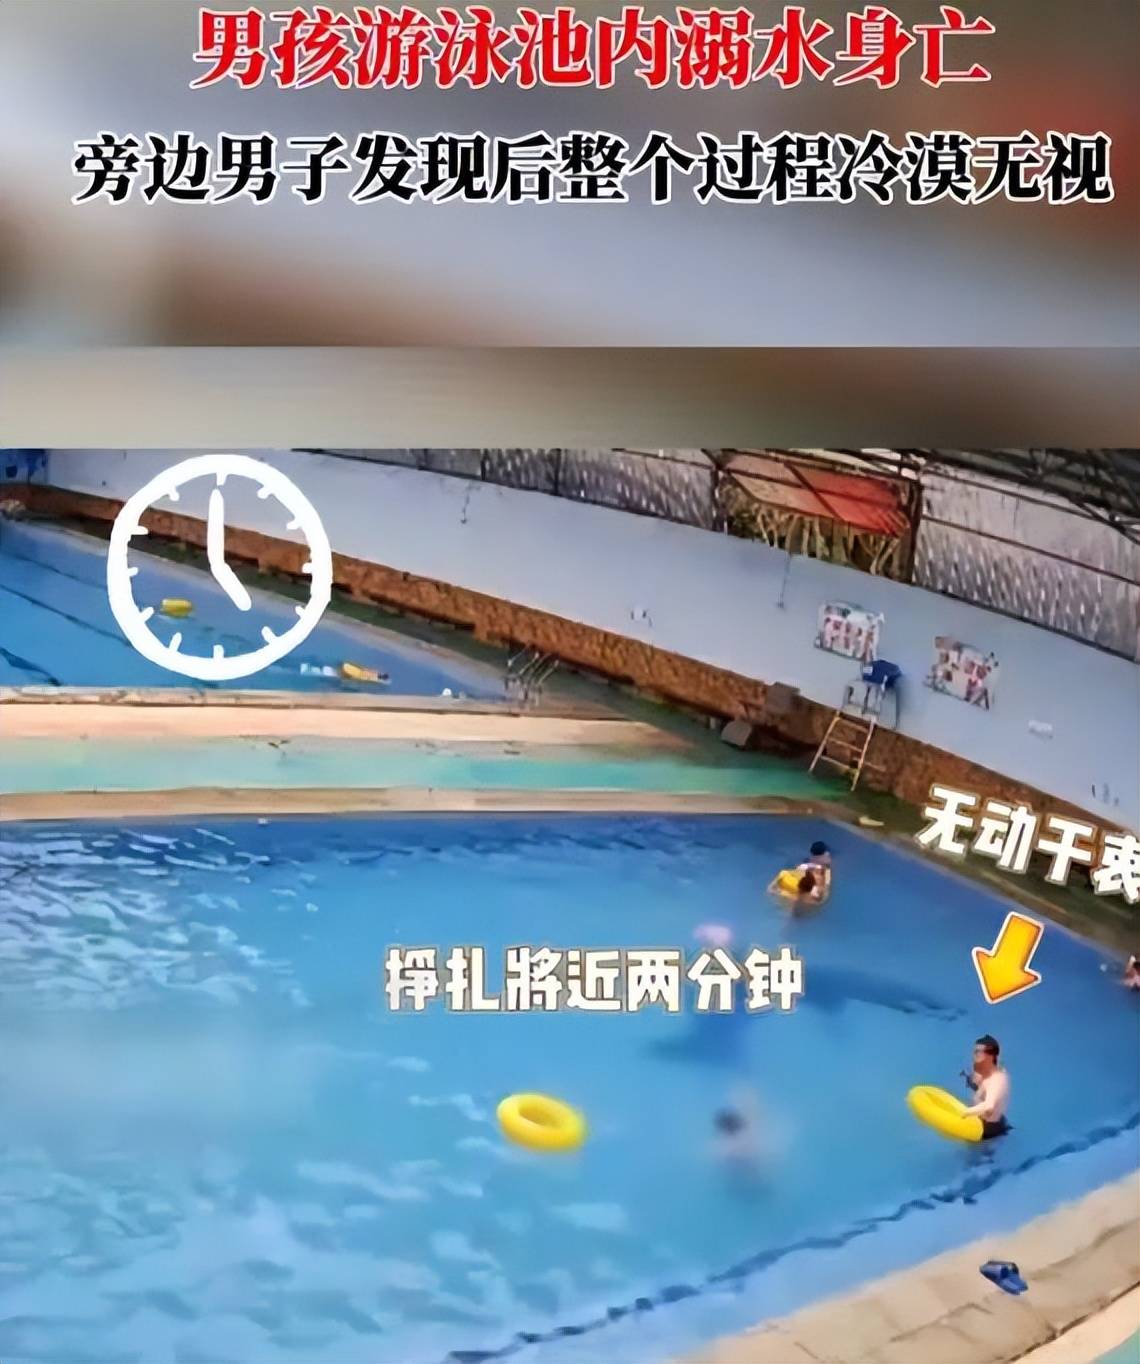 男孩游泳池溺亡10分钟无人救援,一男子冷眼旁观太令人气愤了